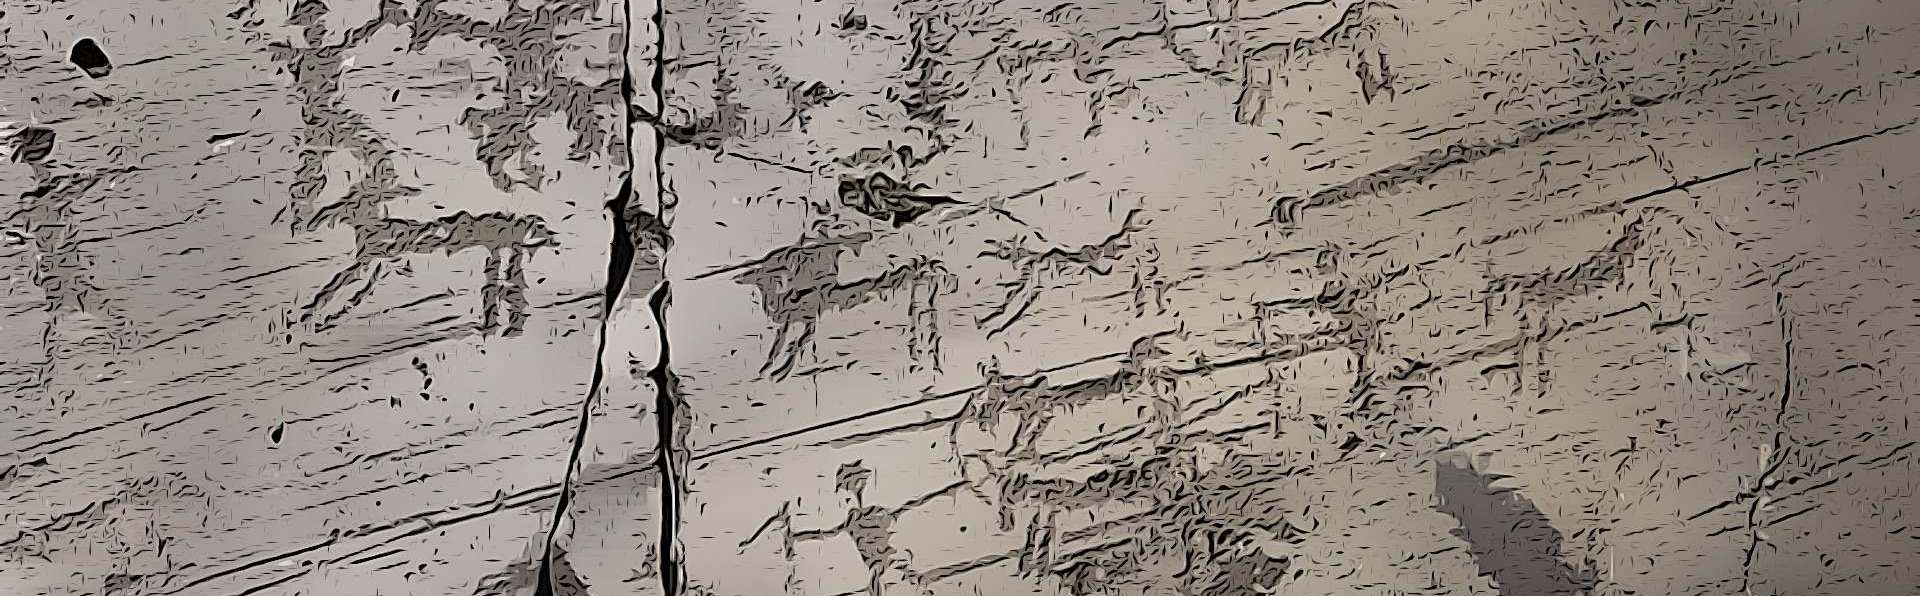 Torri del Benaco | Petroglyphs